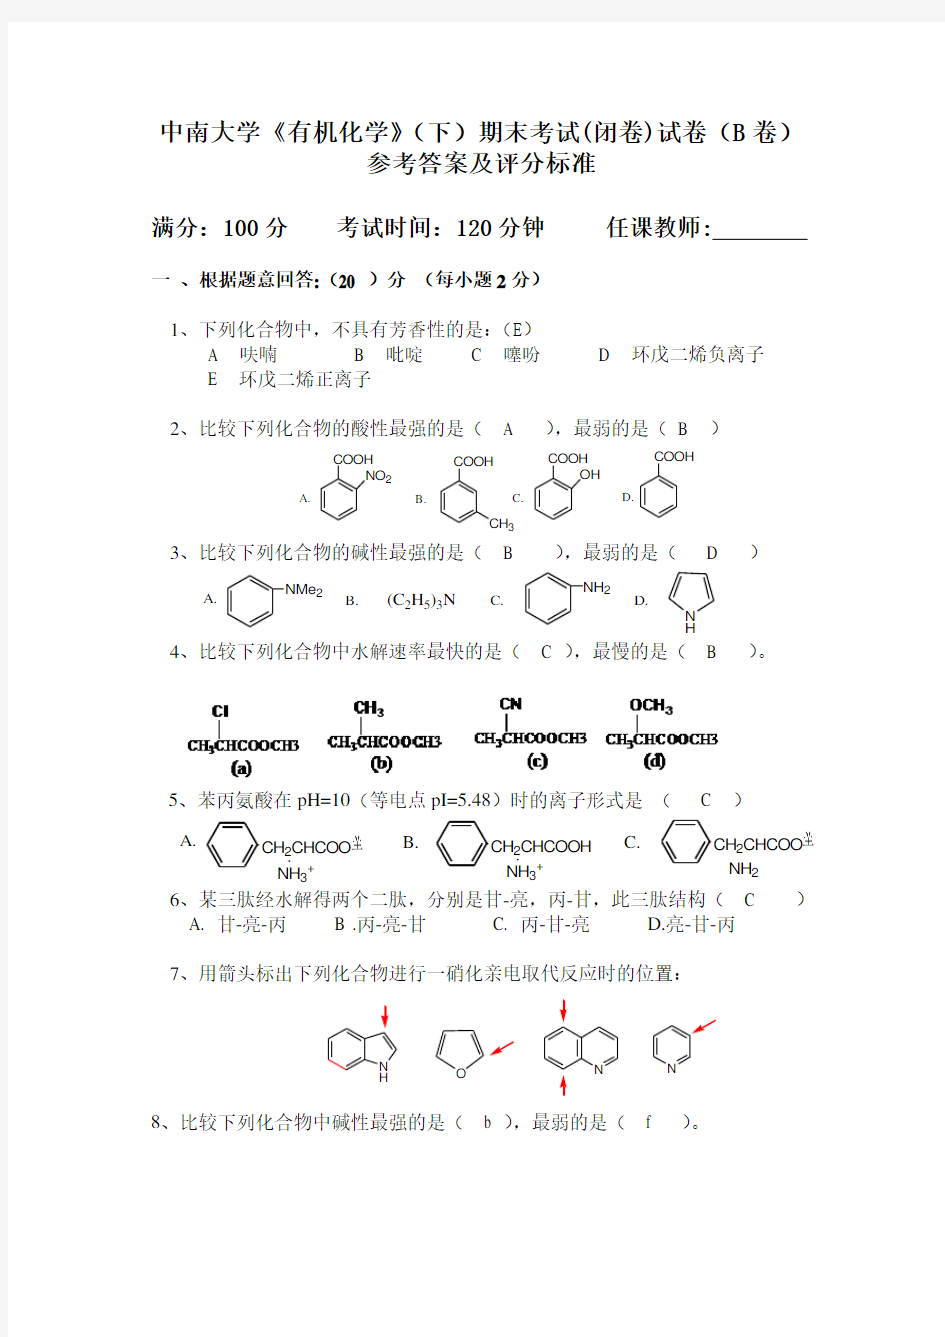 中南大学《有机化学》(下)期末考试(闭卷)试卷(B卷)参考答案及评分标准